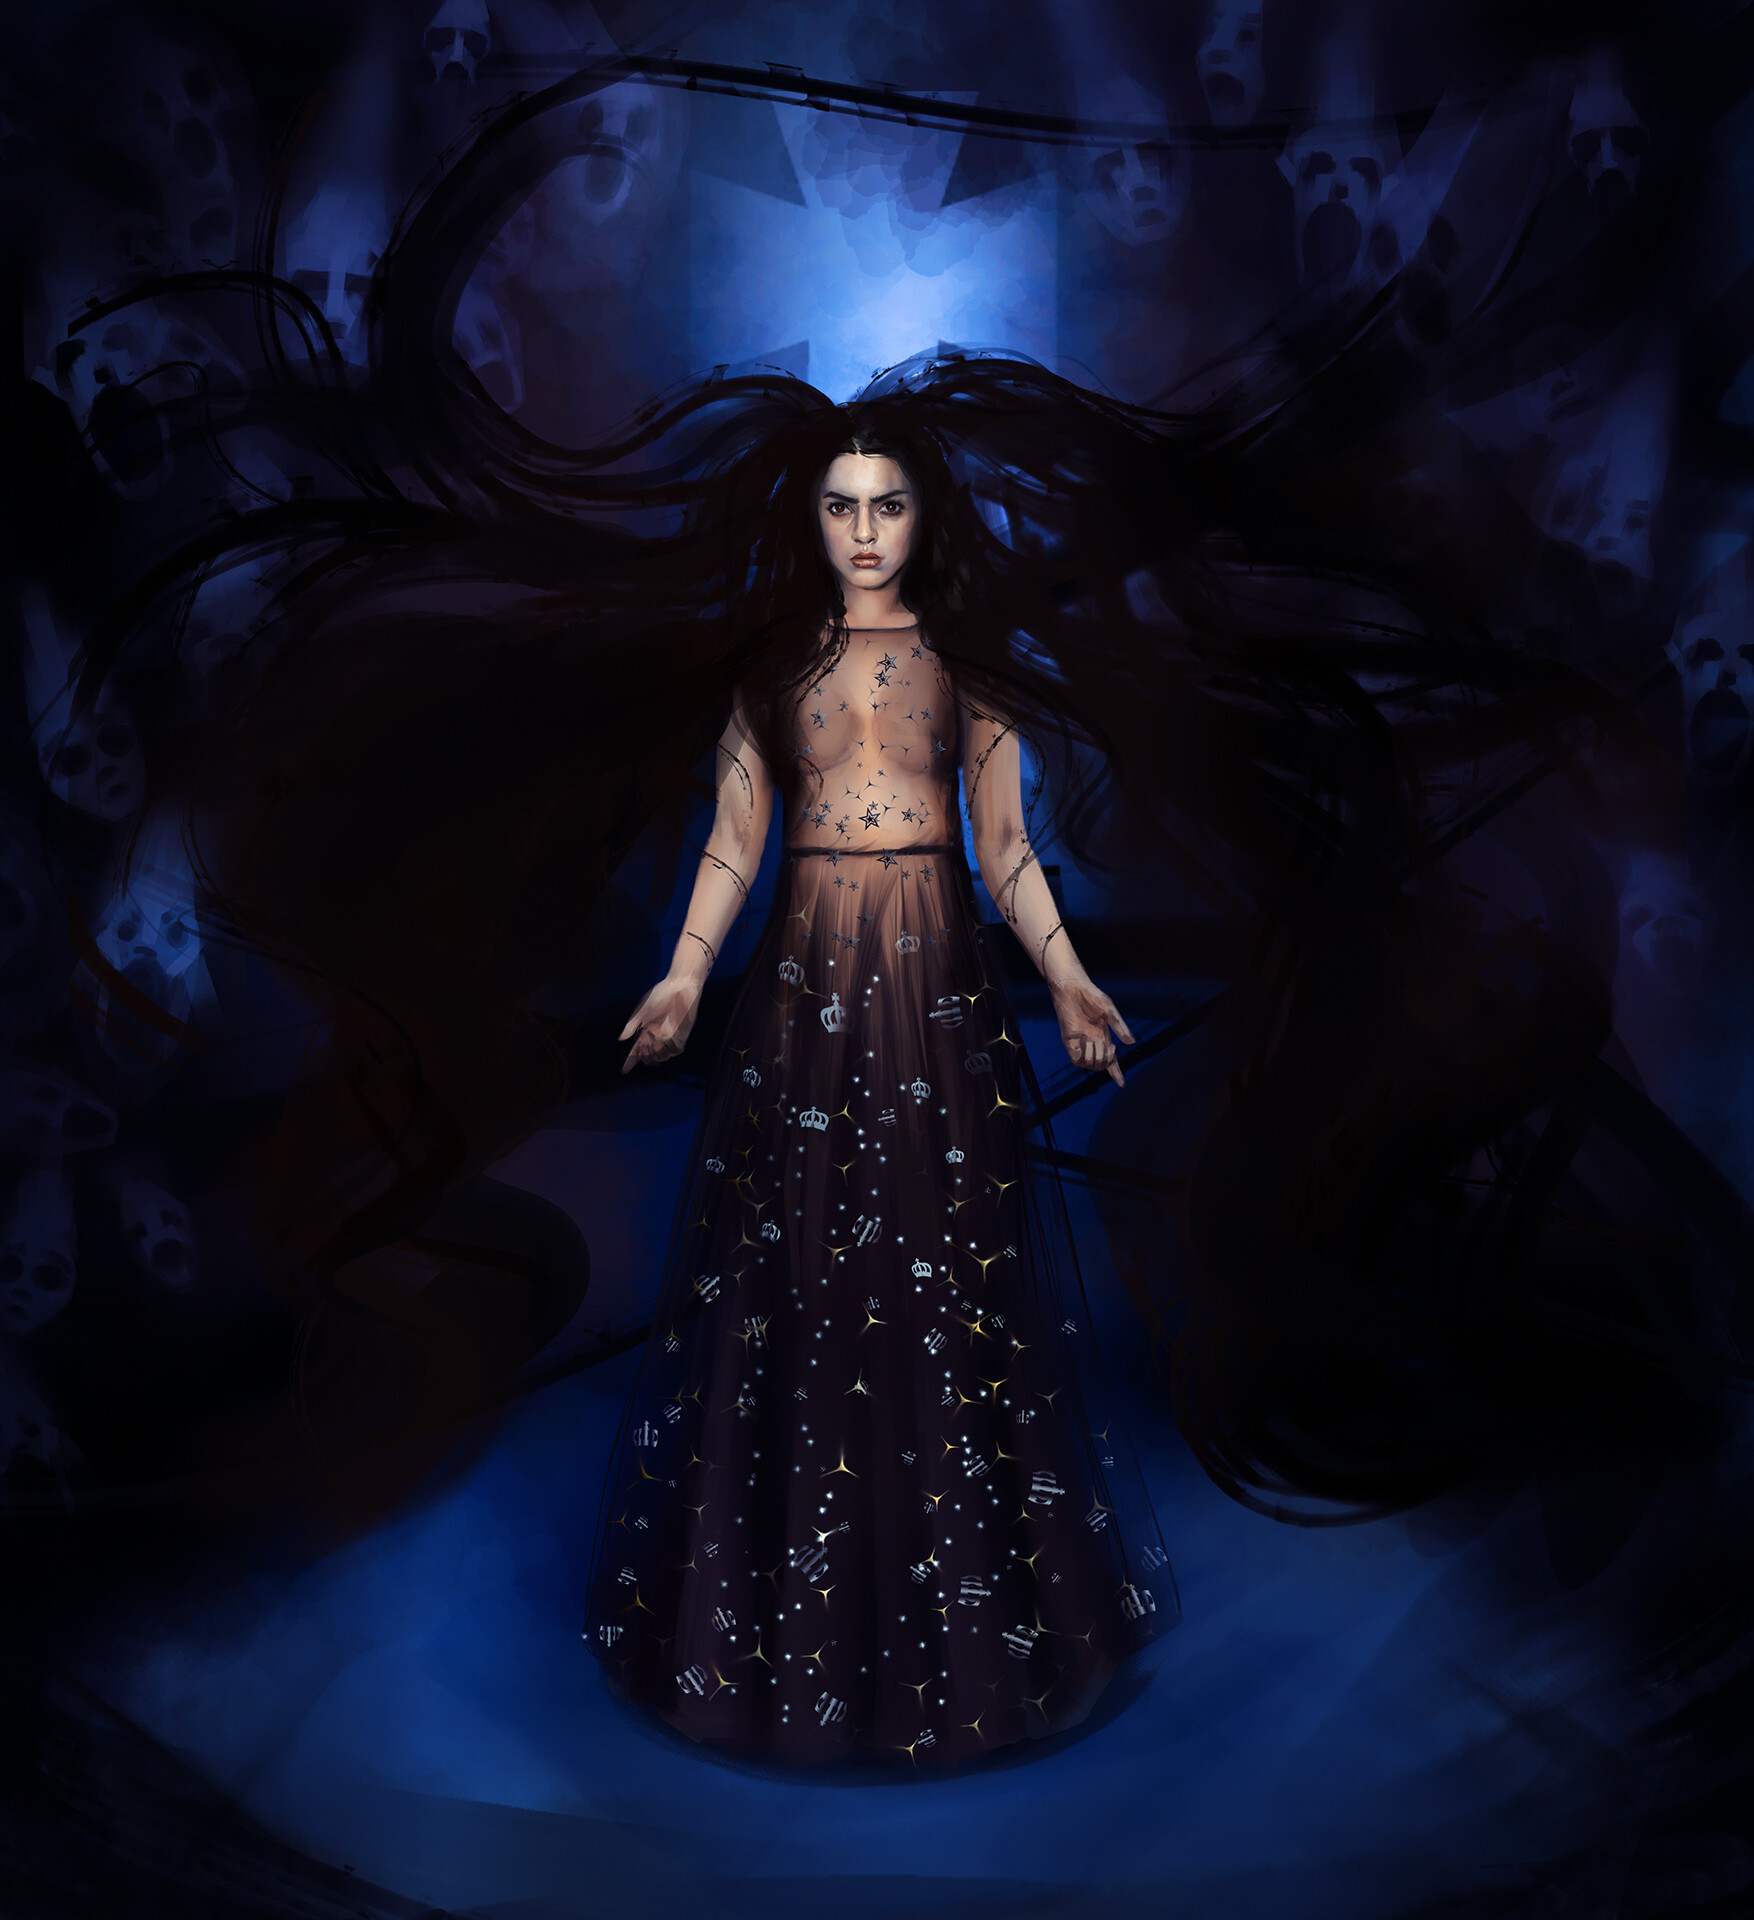 ArtStation - Vampire of the night